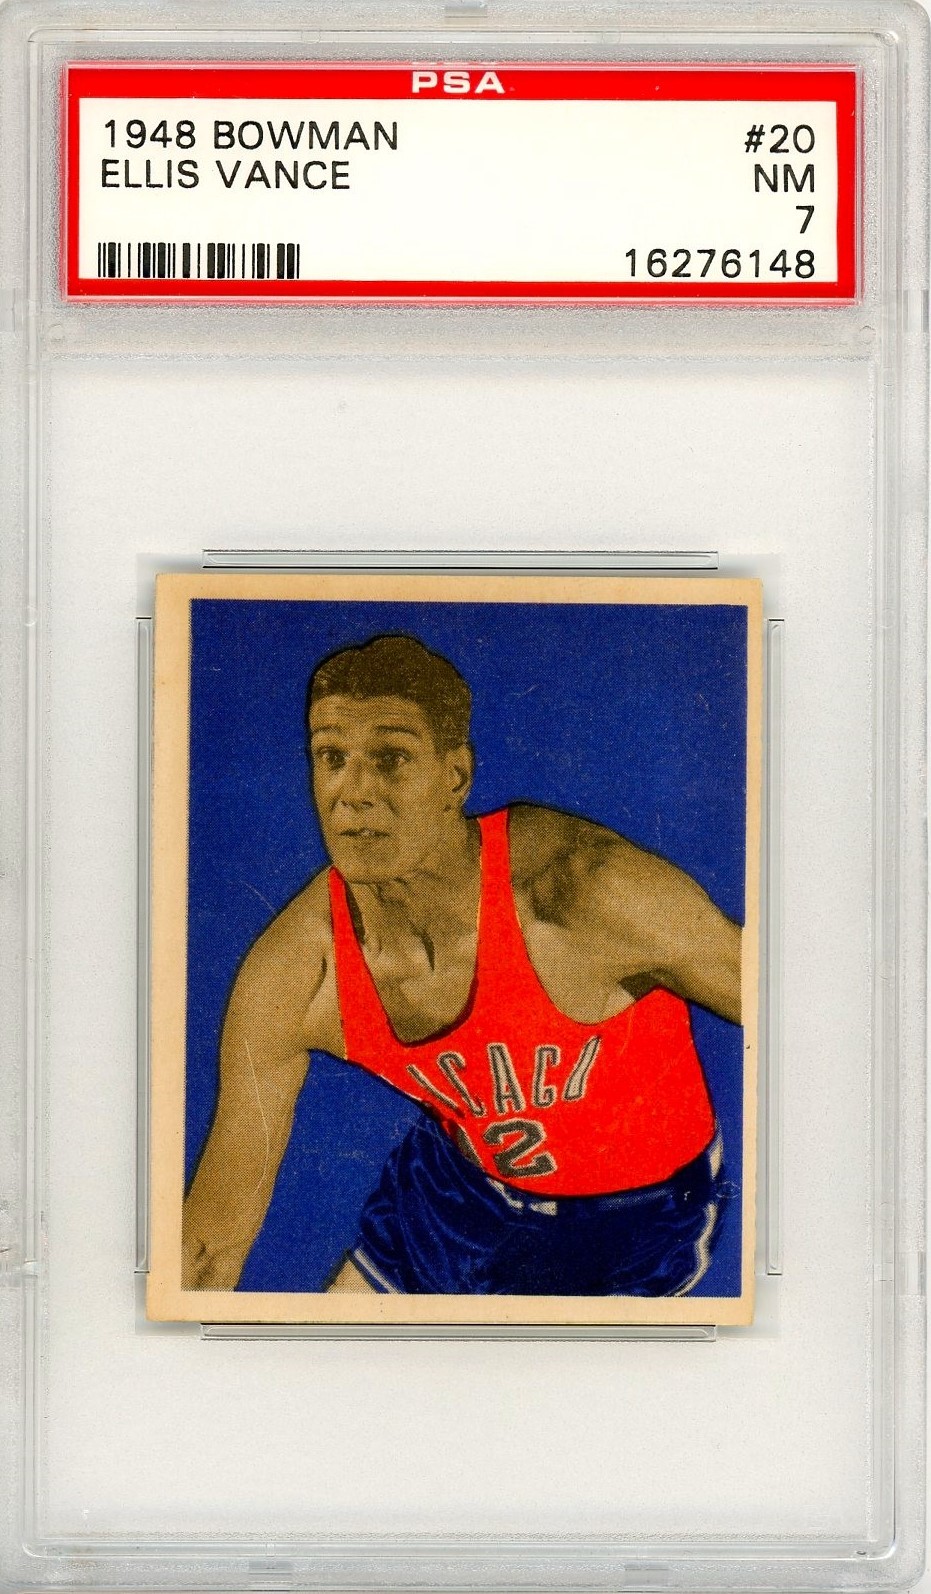 1948 Bowman Ellis Vance Rookie #20 PSA 7 P1374 - $237.60